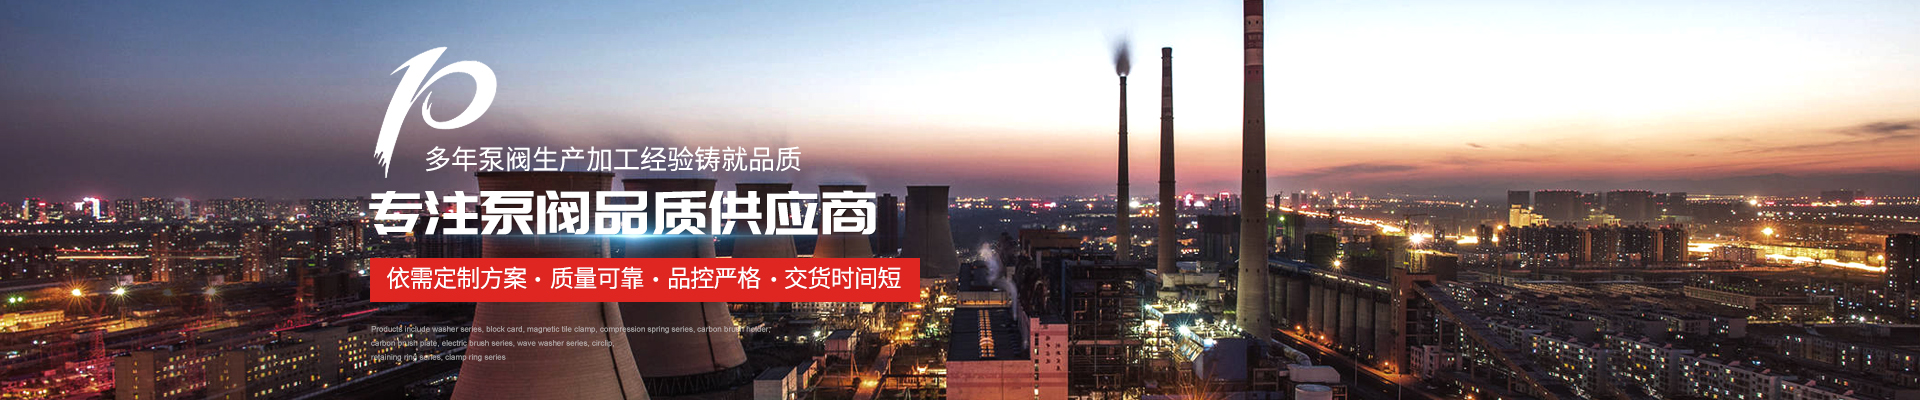 潛水排污泵_3CF消防控制柜廠家 - 上海高適泵閥有限公司